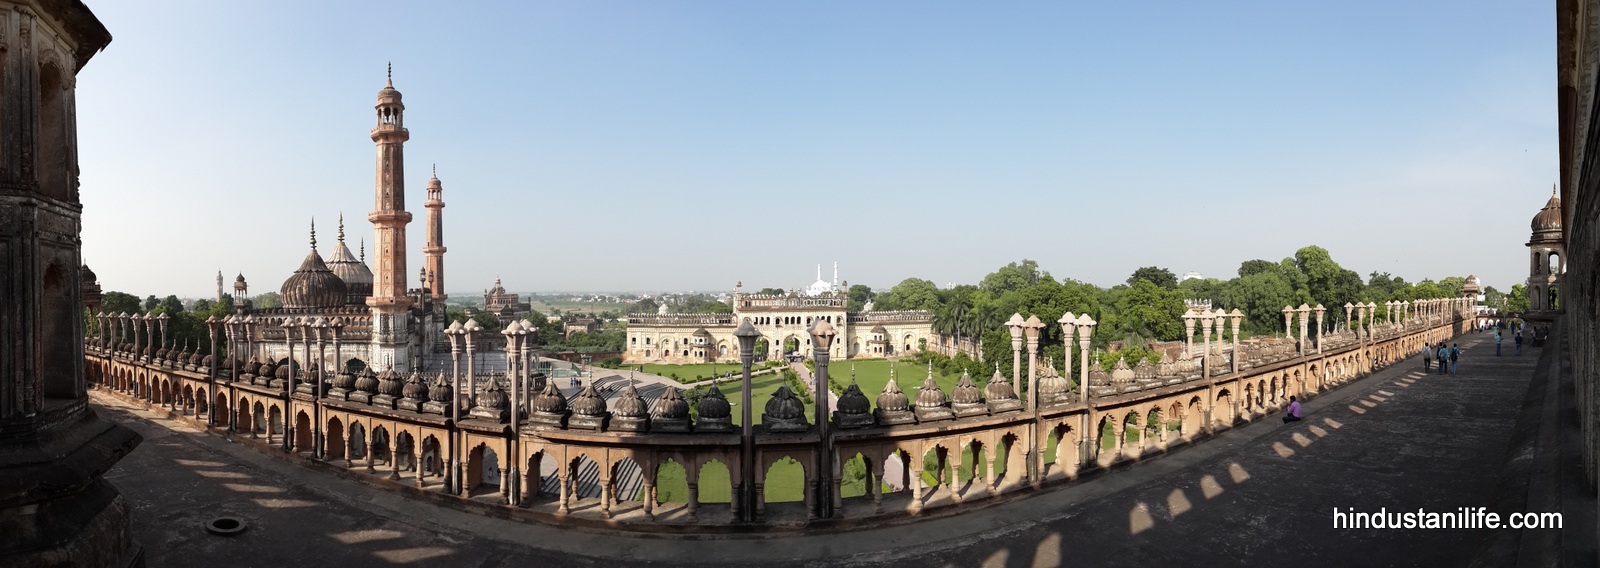 Bara-Imambara-Lucknow-3